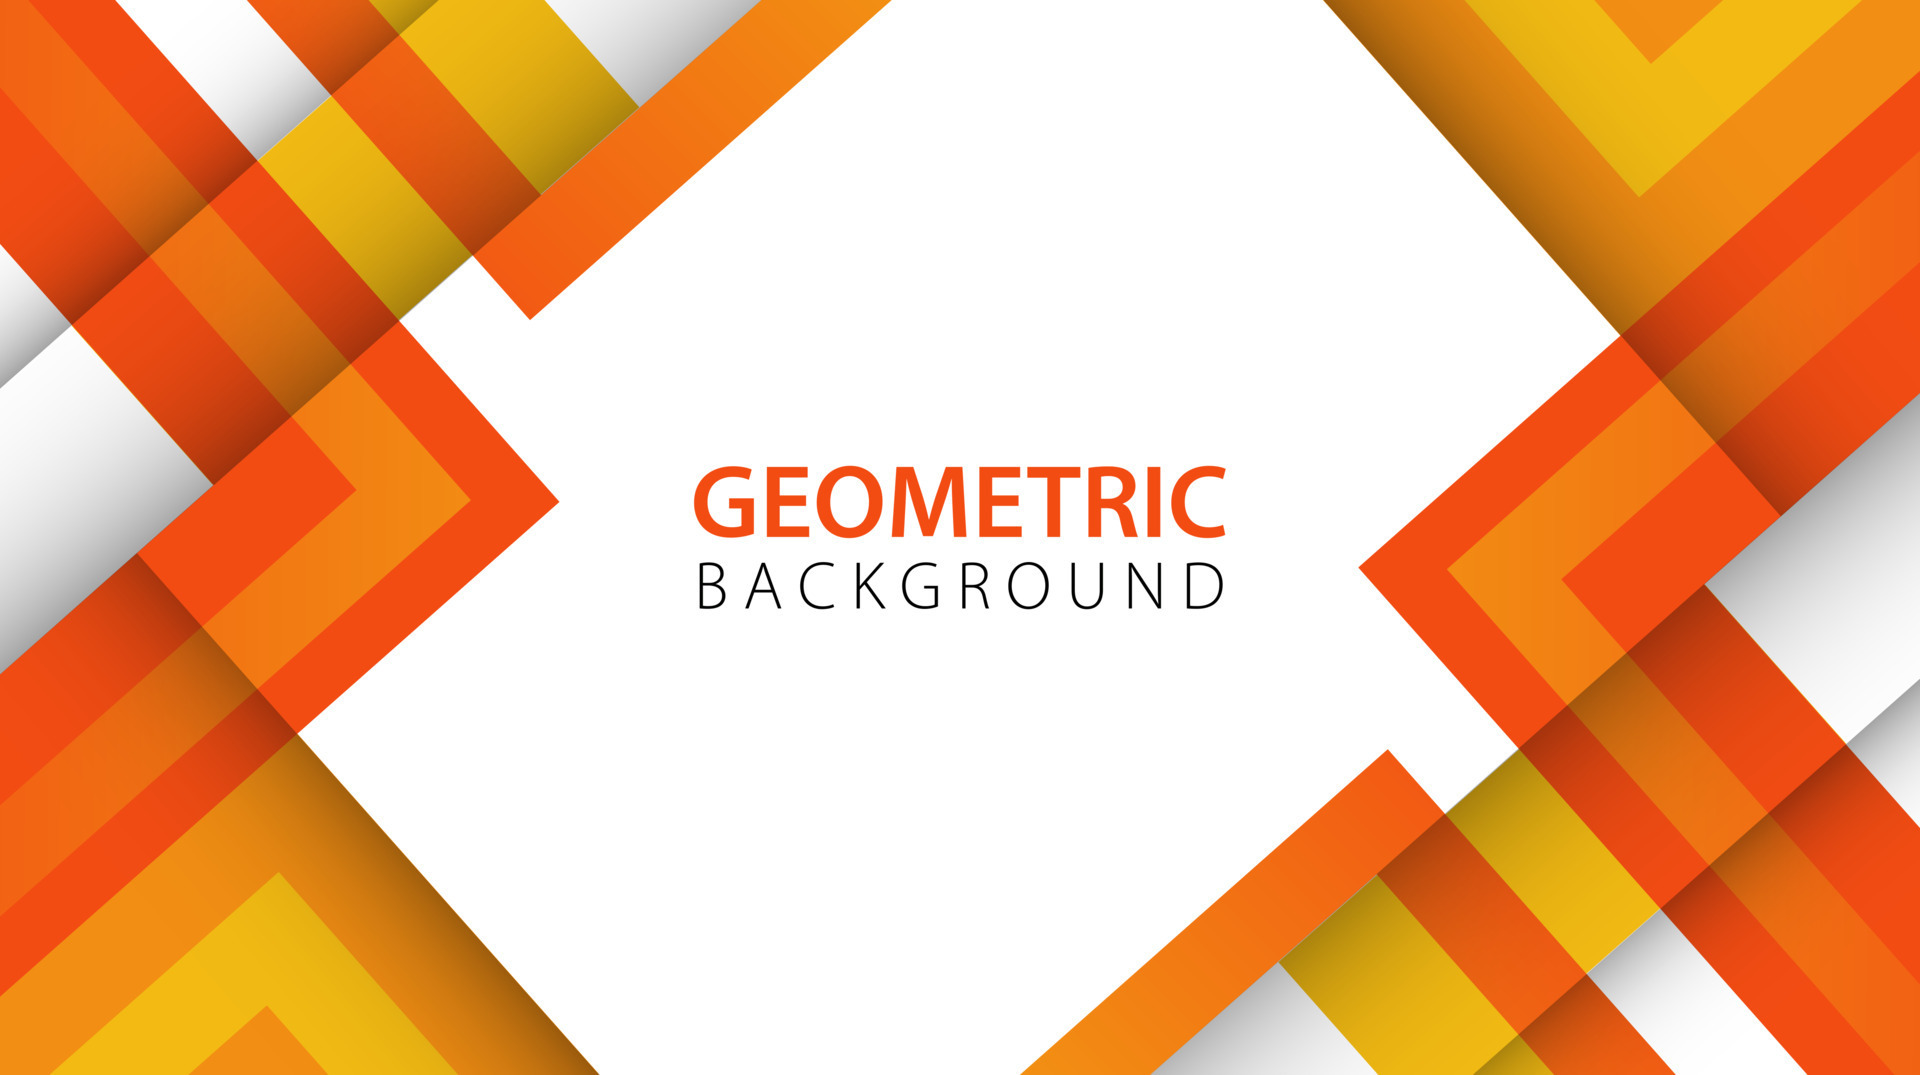 Geometric elements: Các yếu tố hình học được sử dụng rộng rãi trong thiết kế vì chúng có khả năng tạo ra những hình ảnh trừu tượng độc đáo và ấn tượng mạnh. Sự đa dạng của các hình khối hình học sẽ mang lại cho sản phẩm của bạn sự phong phú và thu hút sự chú ý từ khách hàng. Hãy khám phá hình ảnh để tìm hiểu thêm về yếu tố hình học.